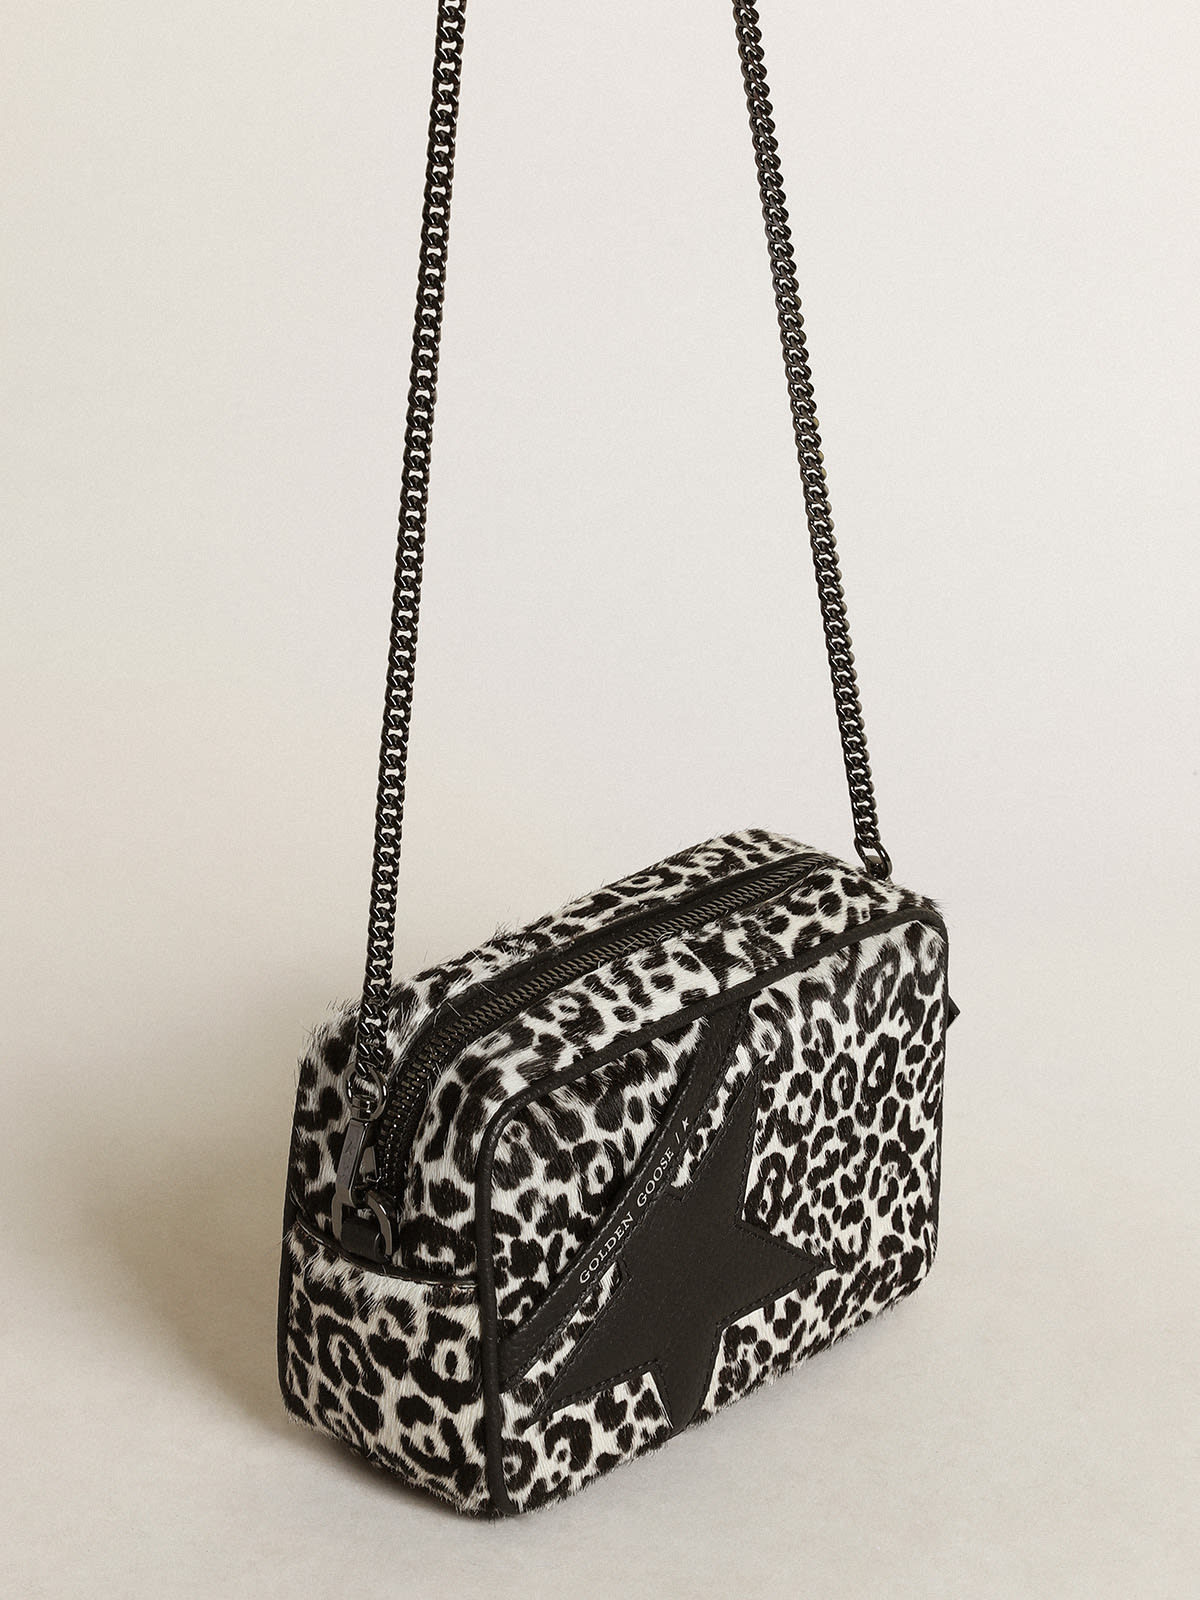 Golden Goose - Women's Mini Star Bag in black and white leopard print pony skin in 